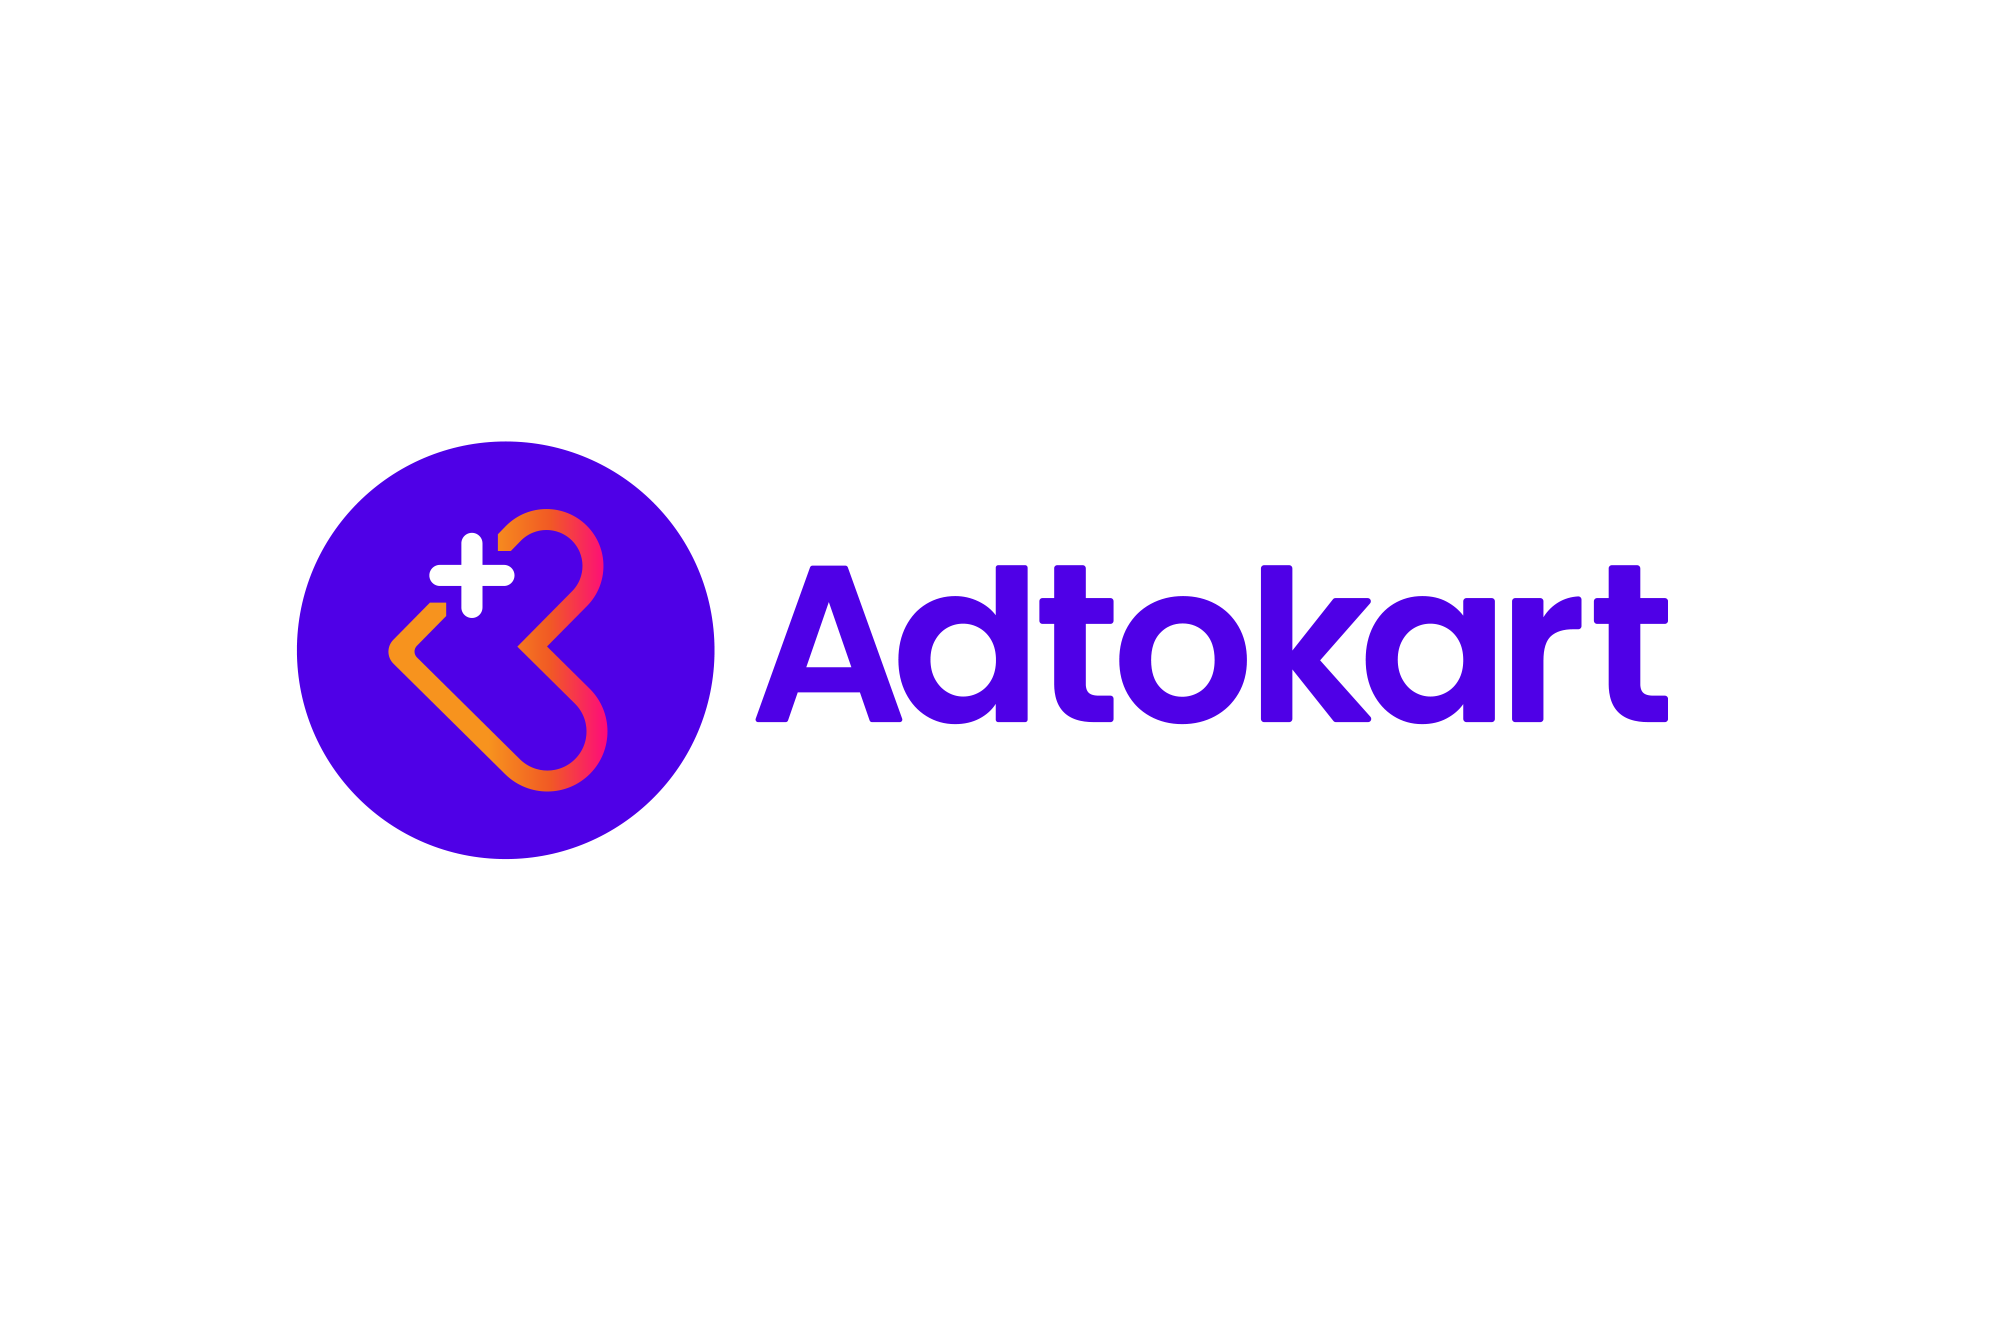 Adtokart App Logo